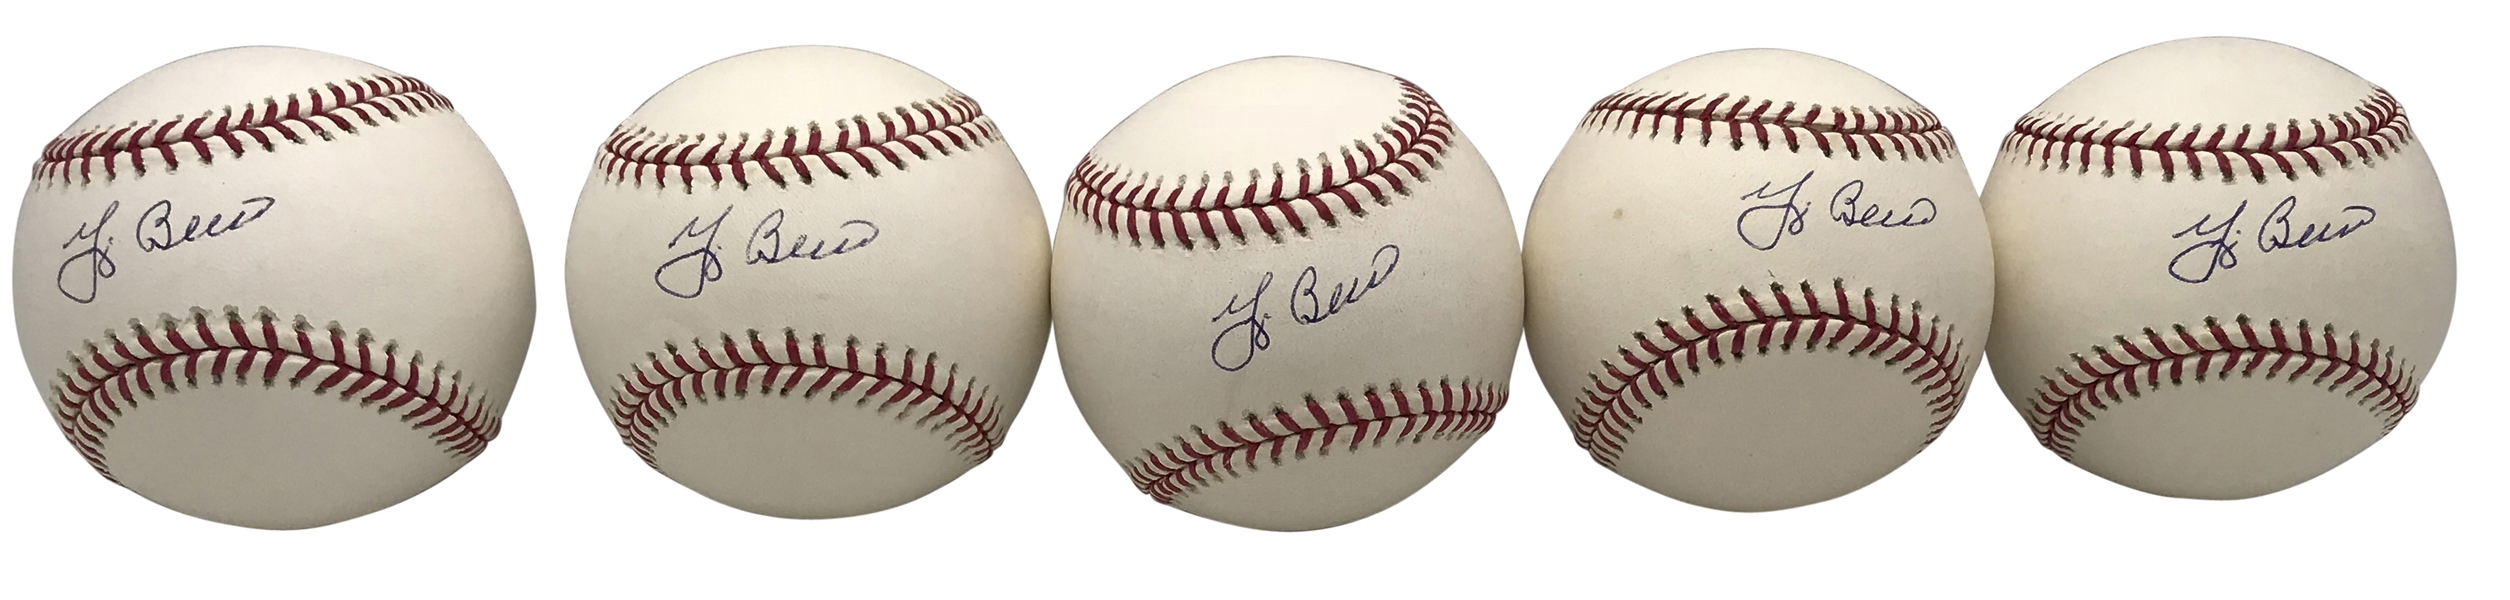 Yogi Berra Lot of Five (5) Signed OML Baseballs (Steiner Sports)